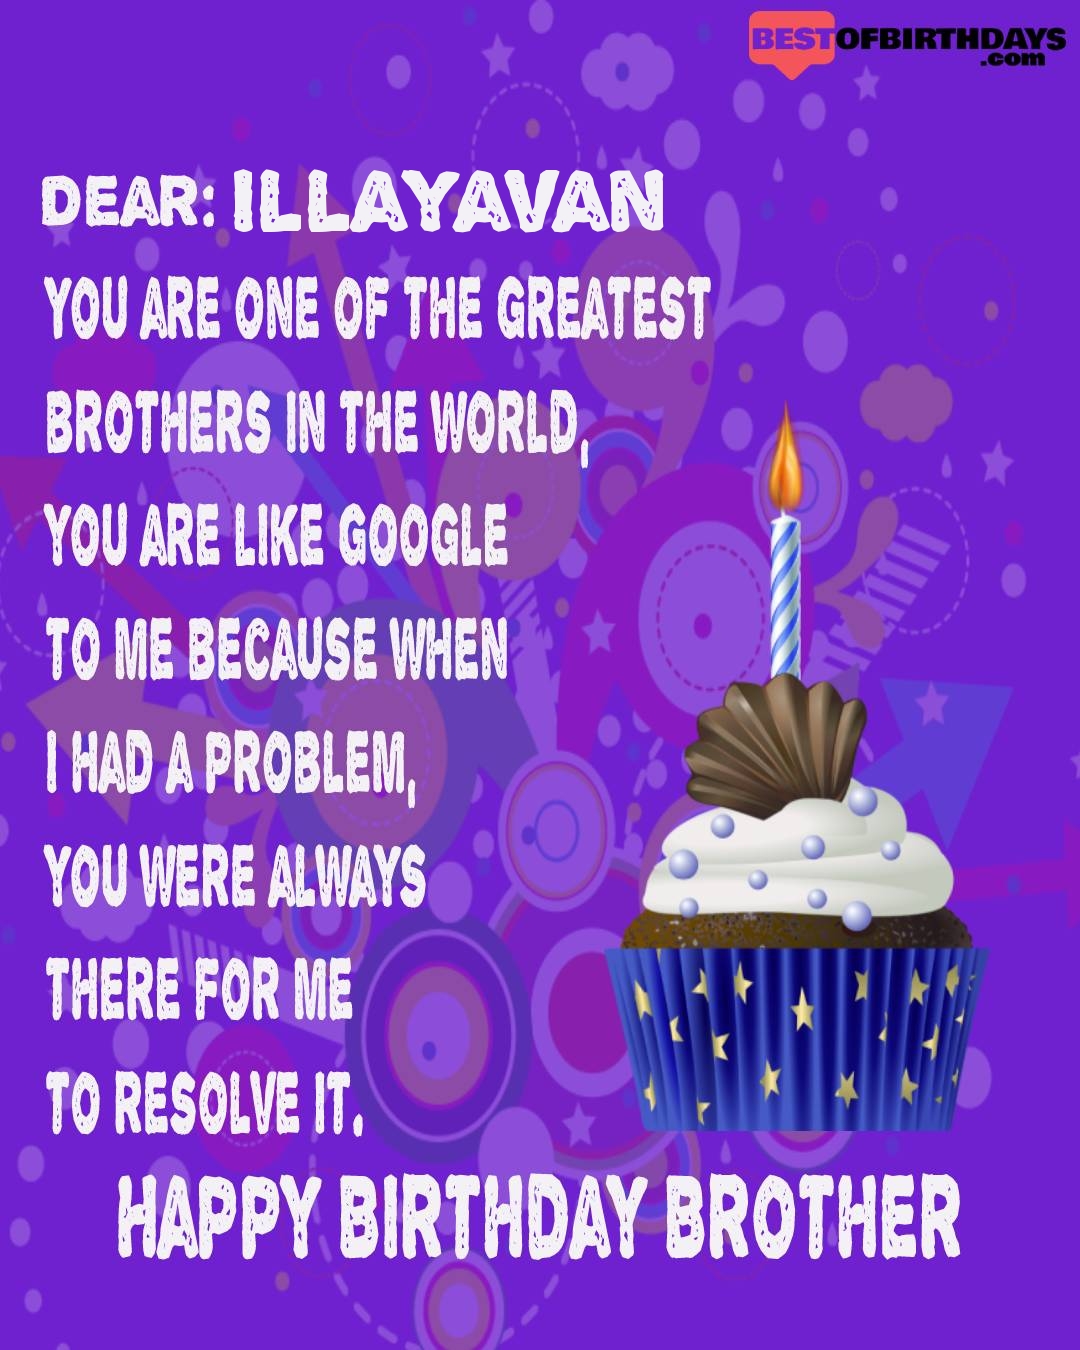 Happy birthday illayavan bhai brother bro